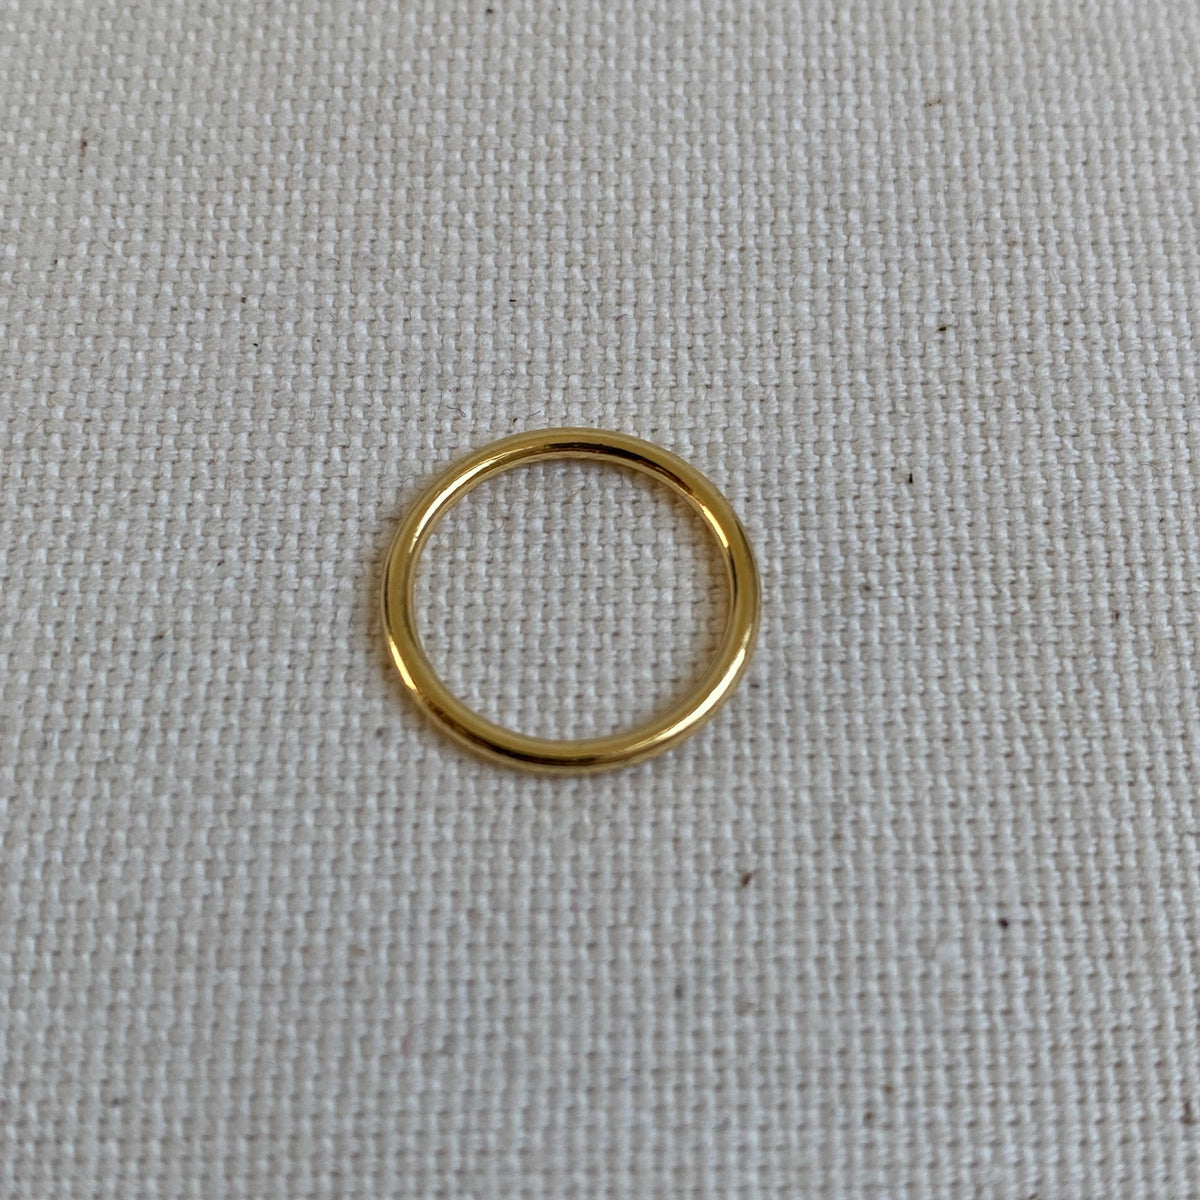 Gold Metal Ring - 12mm